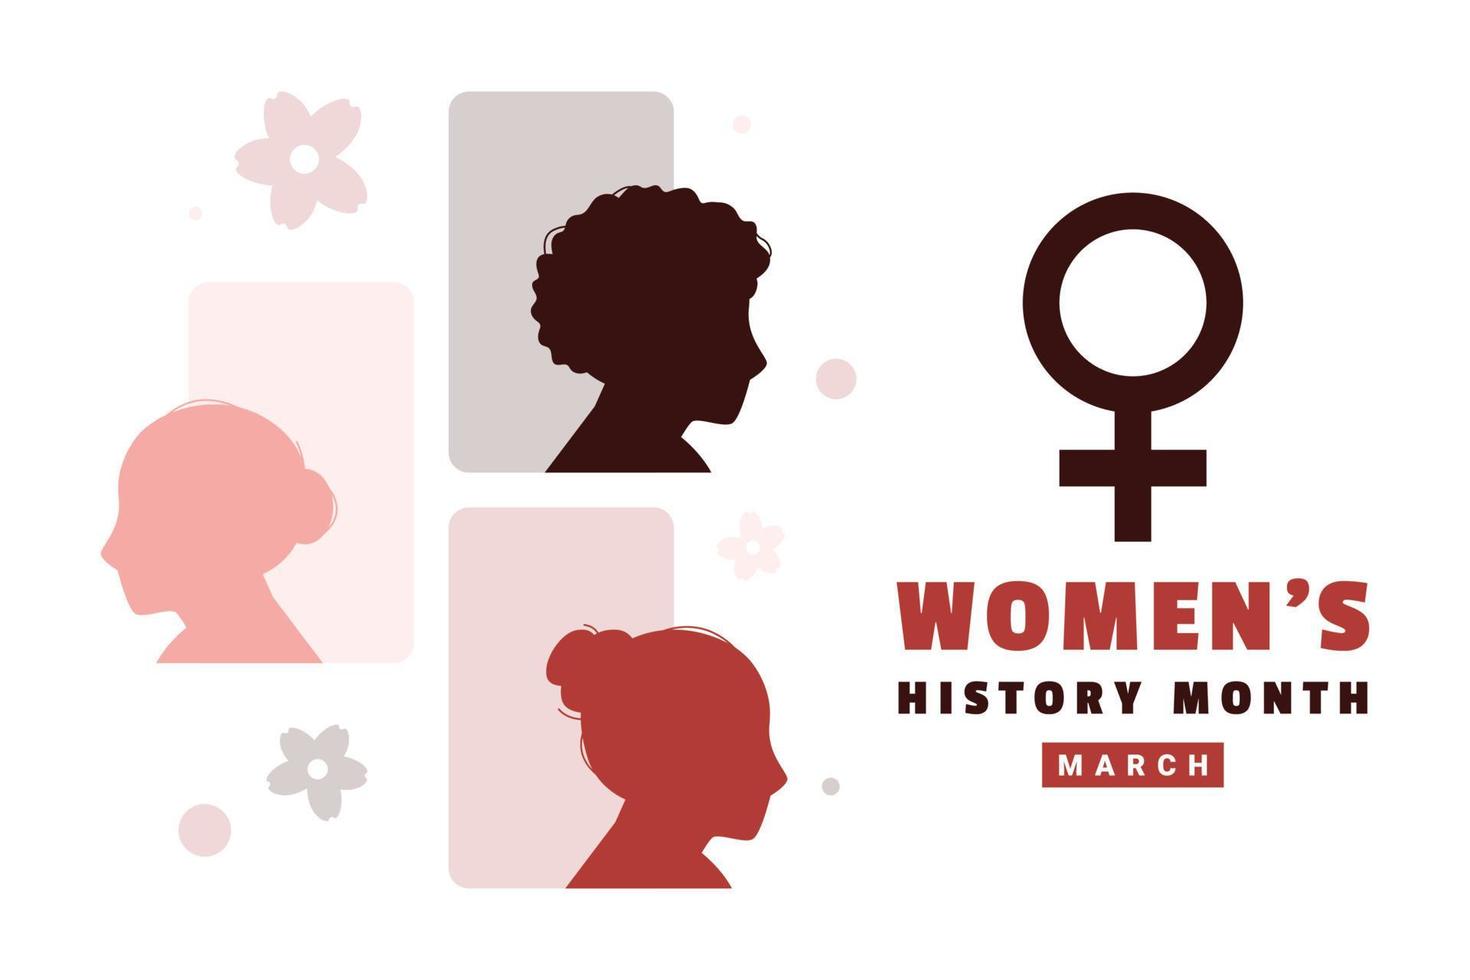 vrouwen geschiedenis maand ontwerp voor Internationale moment vector